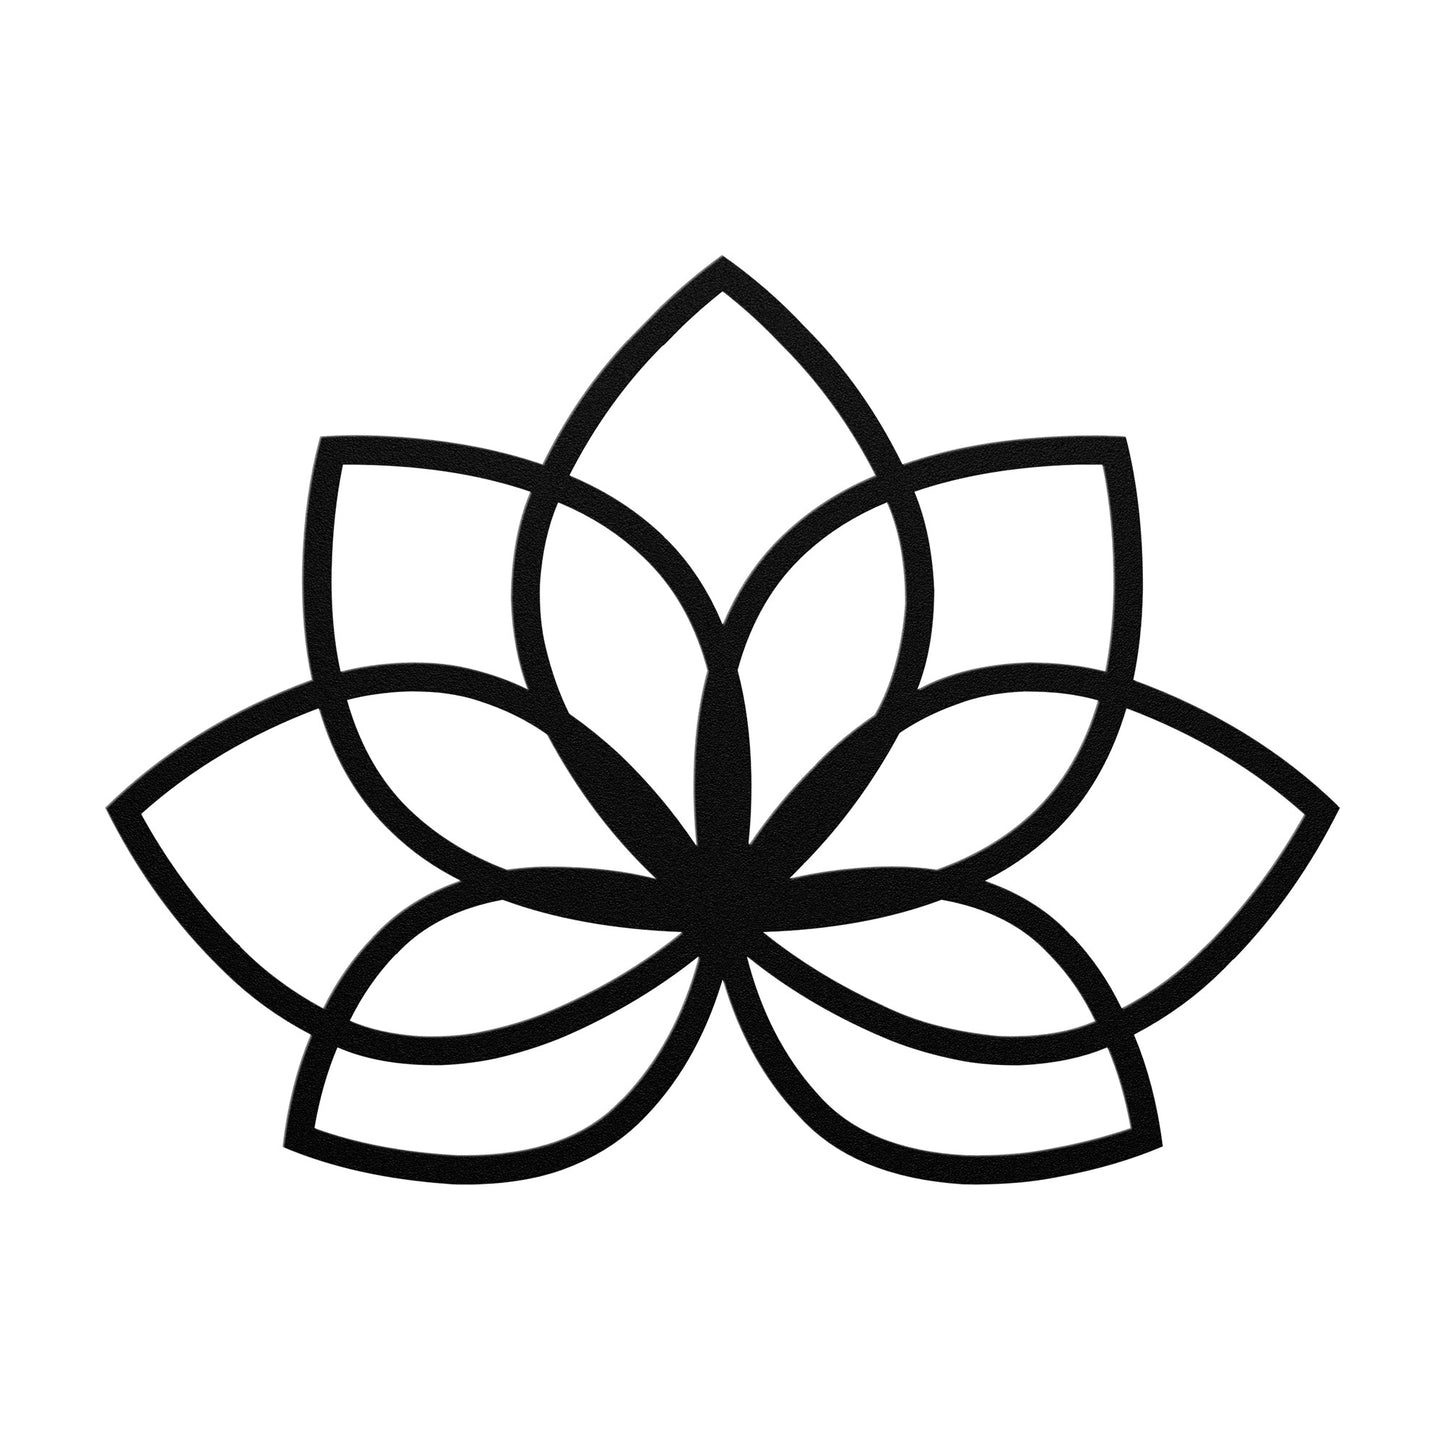 The Lotus Flower - Metal Wall Art